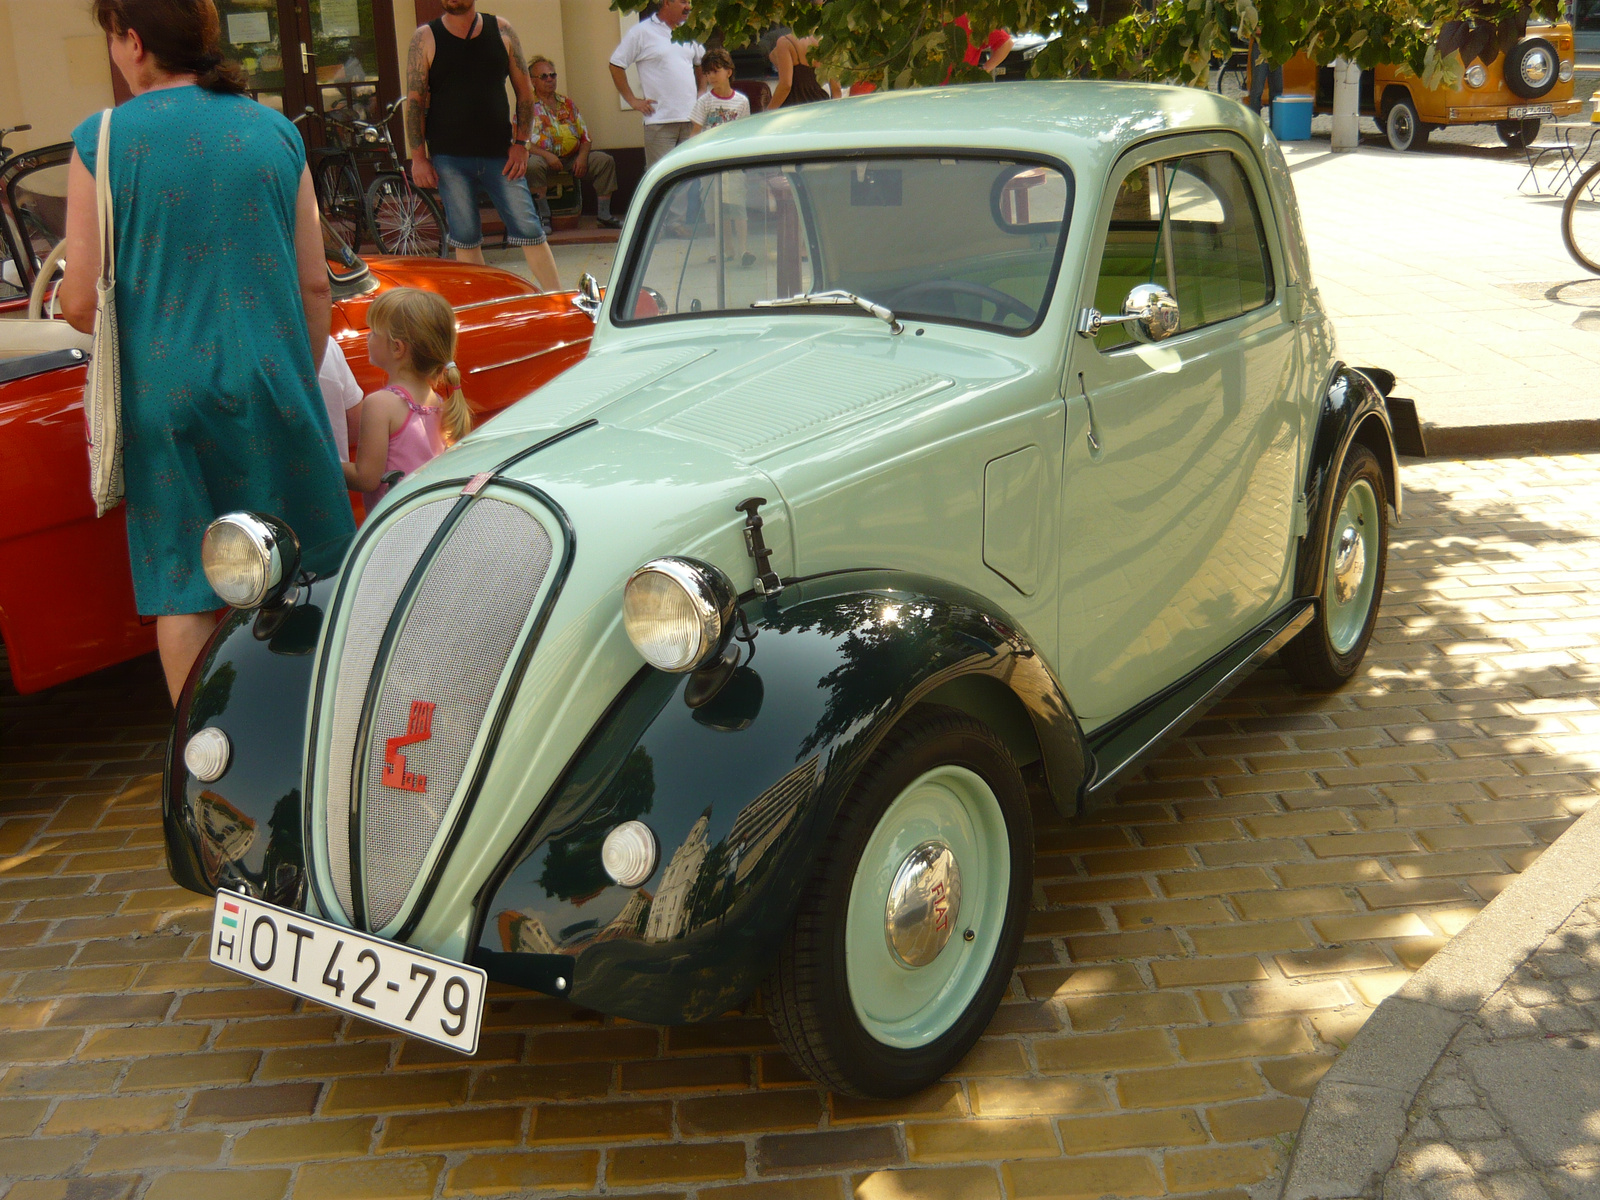 Fiat Topolino